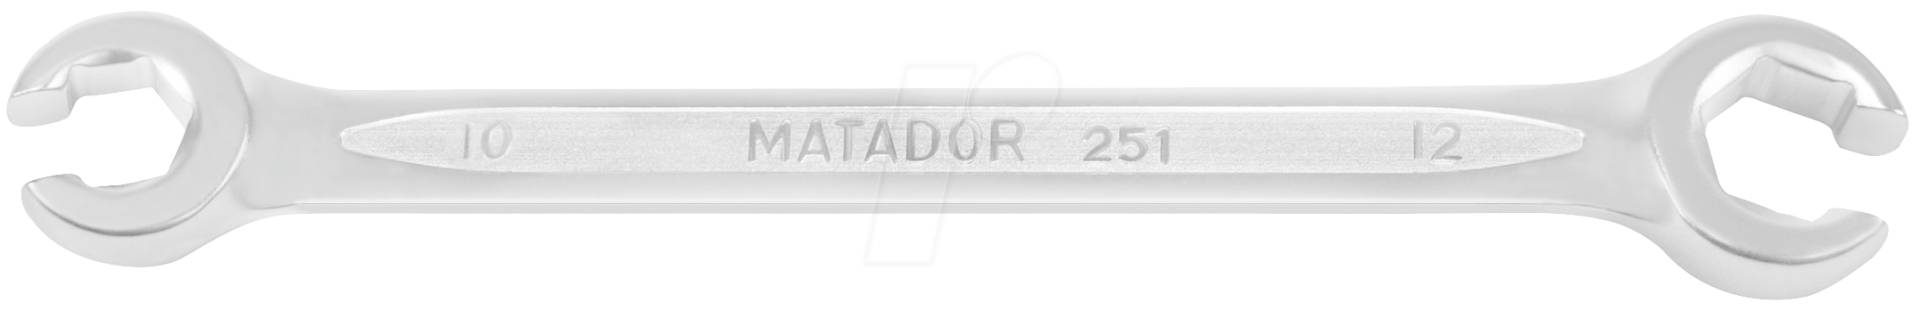 MAT 0251 1113 - Ringschlüssel, offen, SW 11 / 13, DIN 3118 von Matador